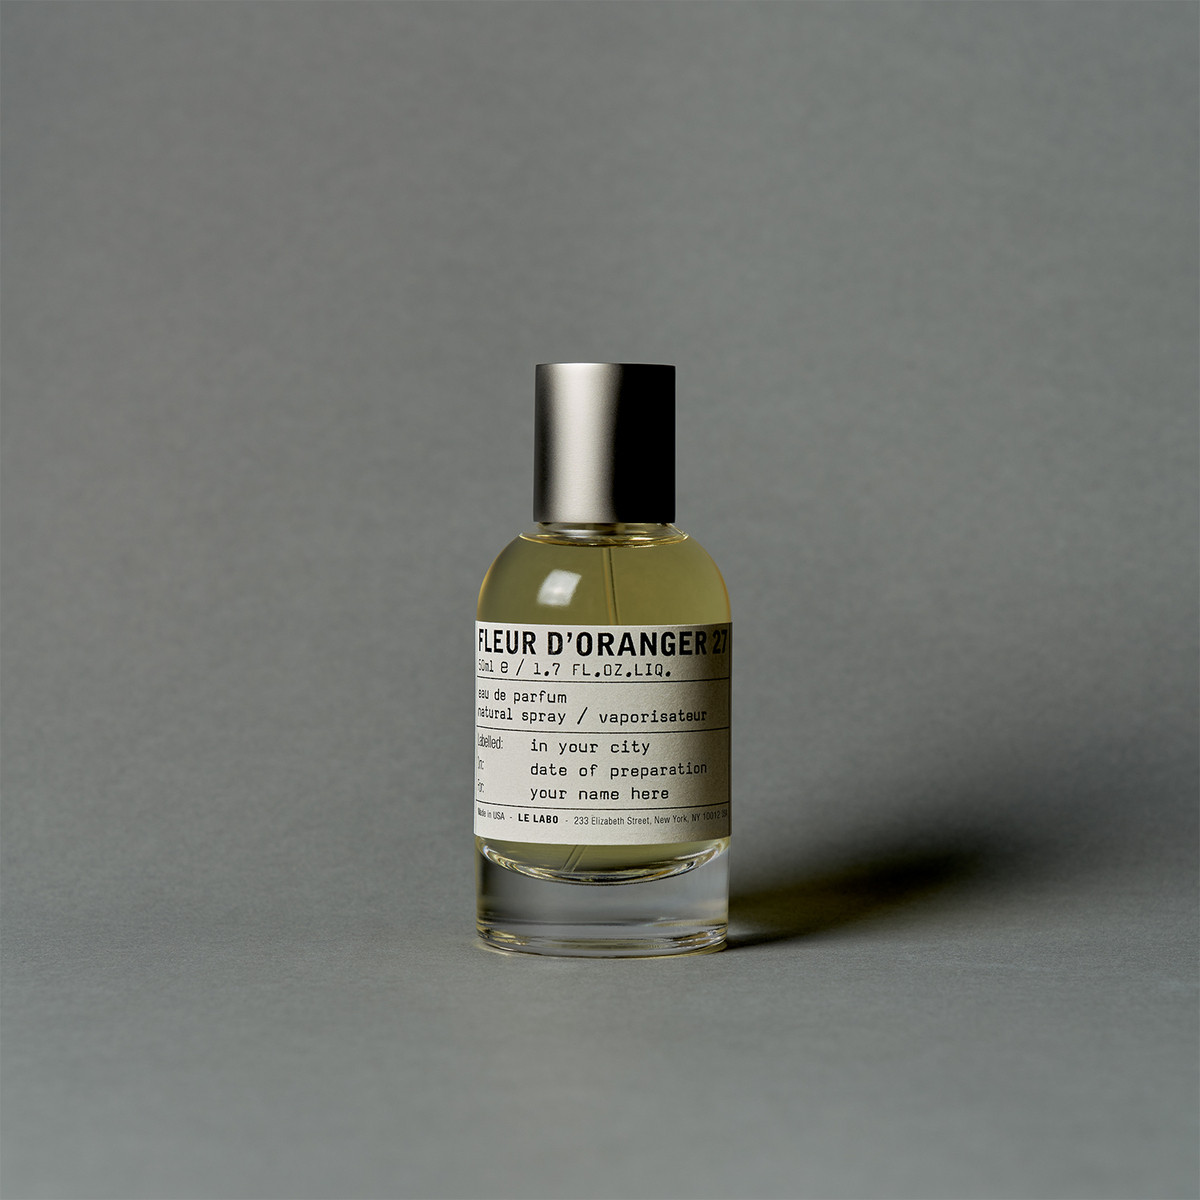 FLEUR D'ORANGER 27 | Eau De Parfum | Le Labo Fragrances